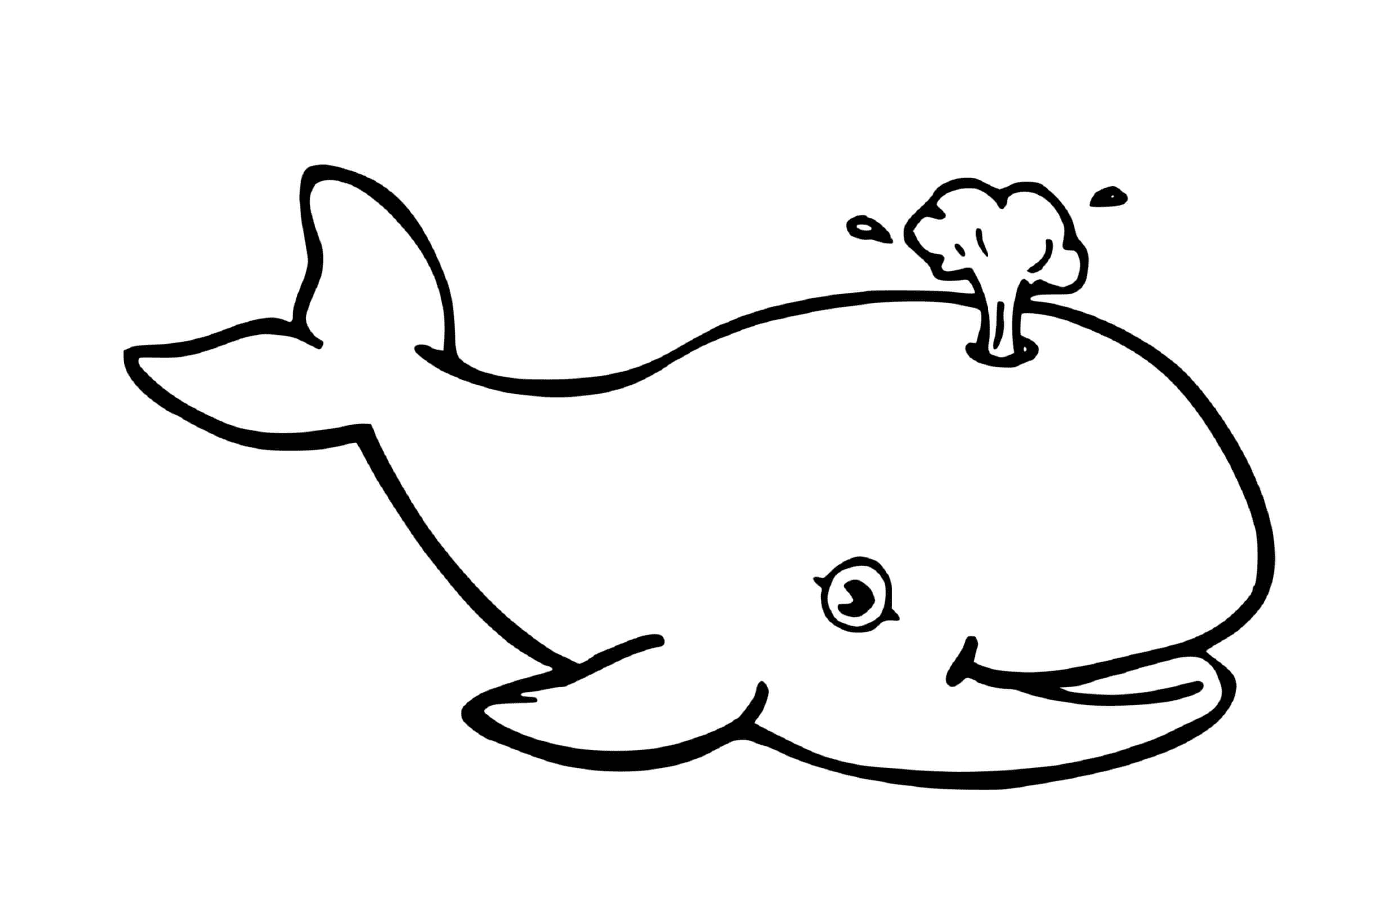  鲸鱼和蘑菇 